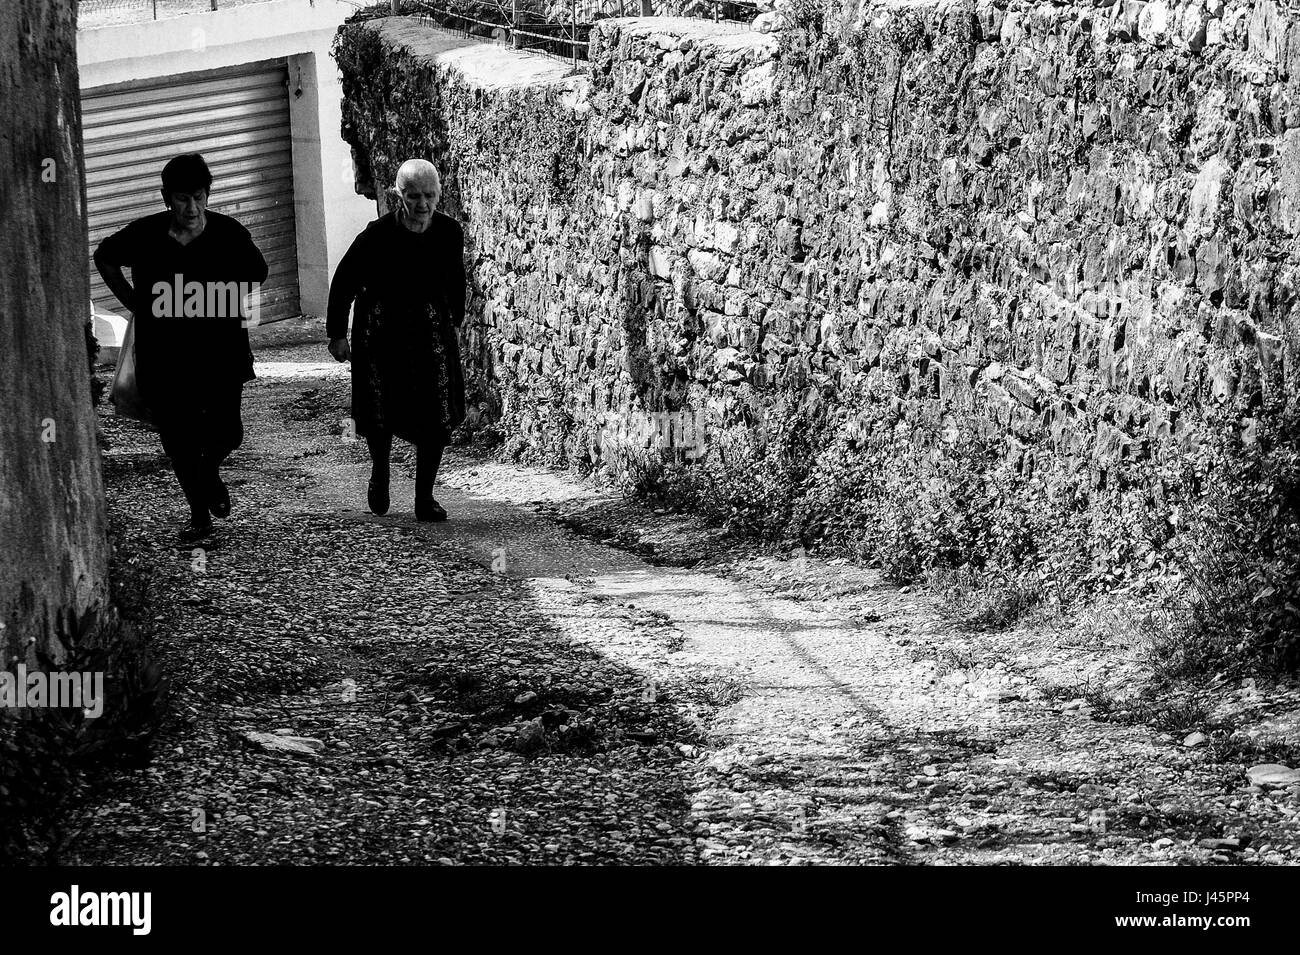 Piqeras, Albanien. 1. Mai 2017. Witwen in schwarz gehen Sie eine Gasse in Piqeras. Balkan Witwen des Krieges werden voraussichtlich in ewiger Trauer um ihren verstorbenen Mann unverheiratet bleiben. Albanien hat eine Bevölkerung von knapp über 3 Millionen, nur ein Drittel der alle Albaner in der Welt aufgrund der negativen Migration. Fast 60 % der Bevölkerung sind Muslime, in der Nähe von 20 % arbeitslos und 15 % unterhalb der Armutsgrenze. Der Übergang vom Kommunismus, die in den 1990er Jahren begann hat bewiesen Herausforderung aufgrund der hohen Arbeitslosigkeit, weitverbreitete Korruption, marode Infrastruktur und leistungsstarke organisiertes Verbrechernetze. Die Länder Stockfoto